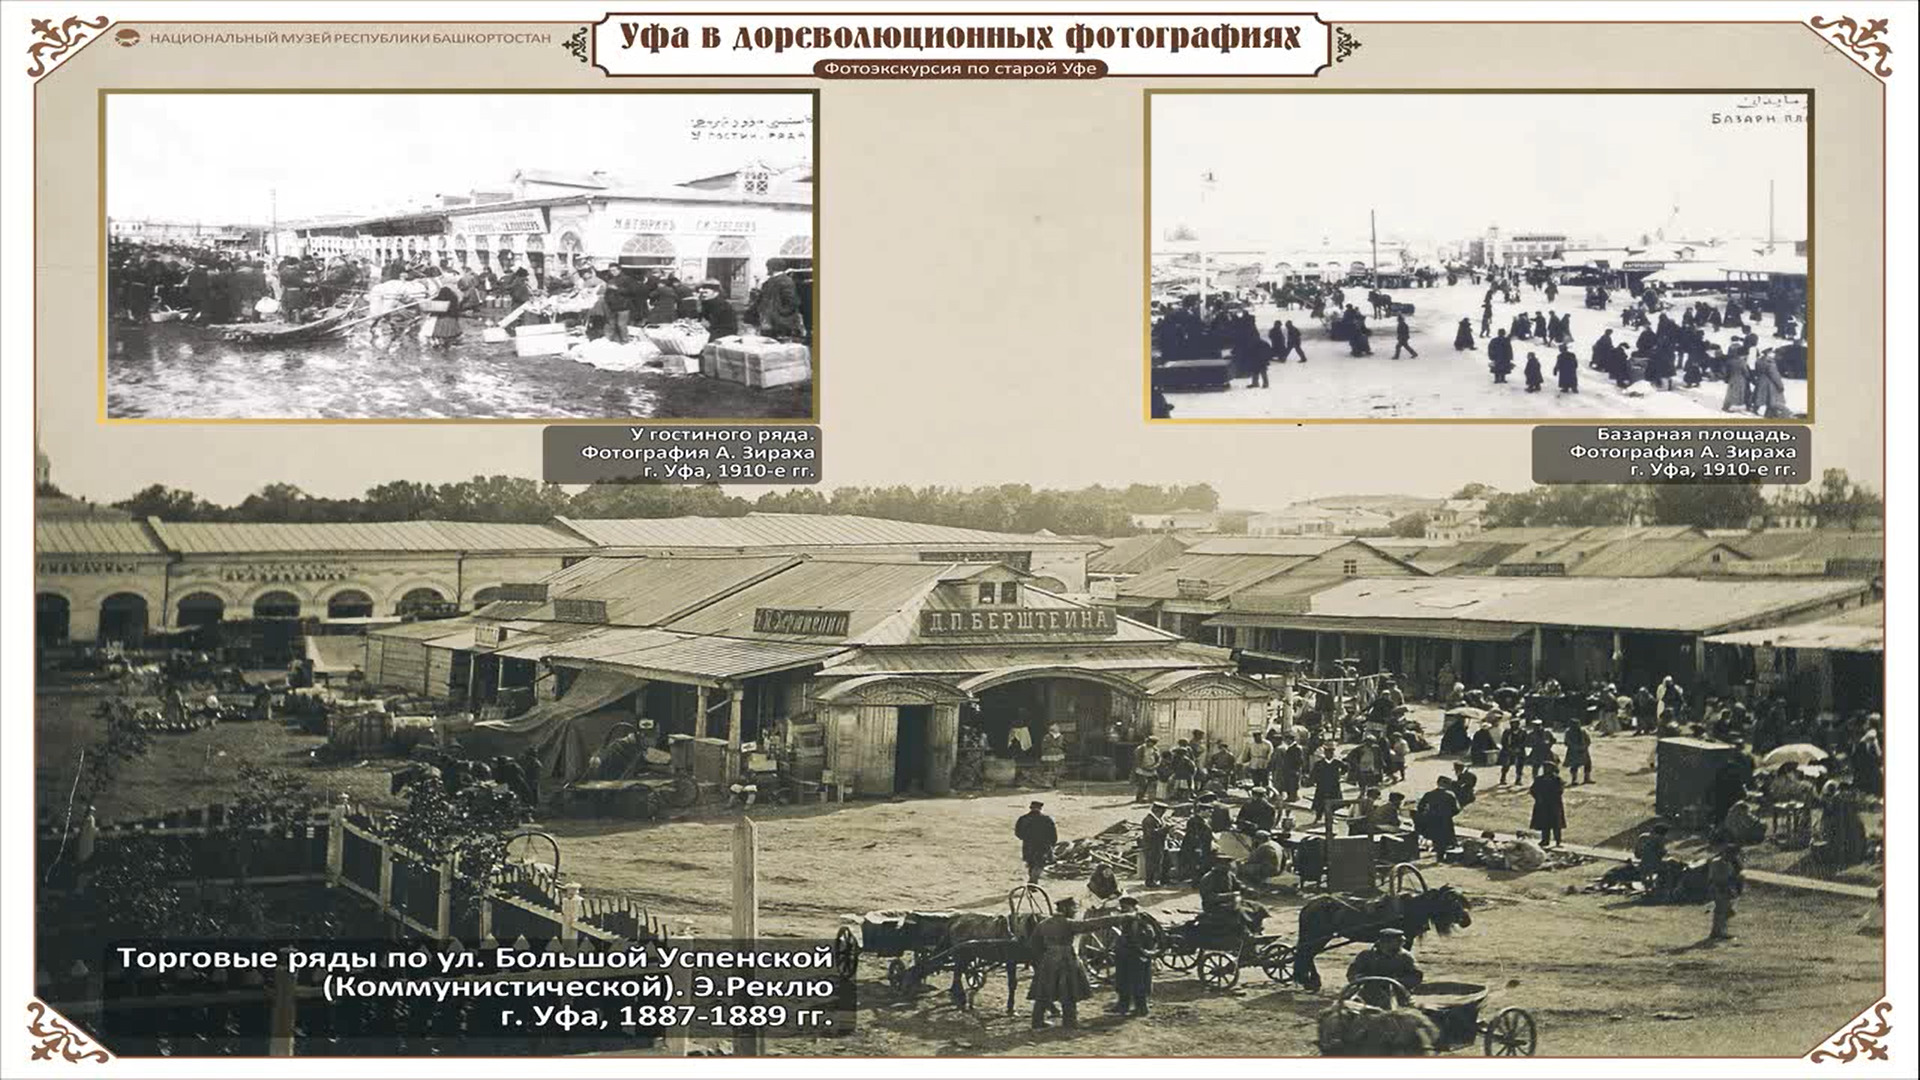 Вверху слева изображен гостиный ряд в 1910-е годы, вверху справа — базарная площадь, а снизу торговые ряды по улице Большой успенской (ныне Коммунистической) 1887–1889 годы